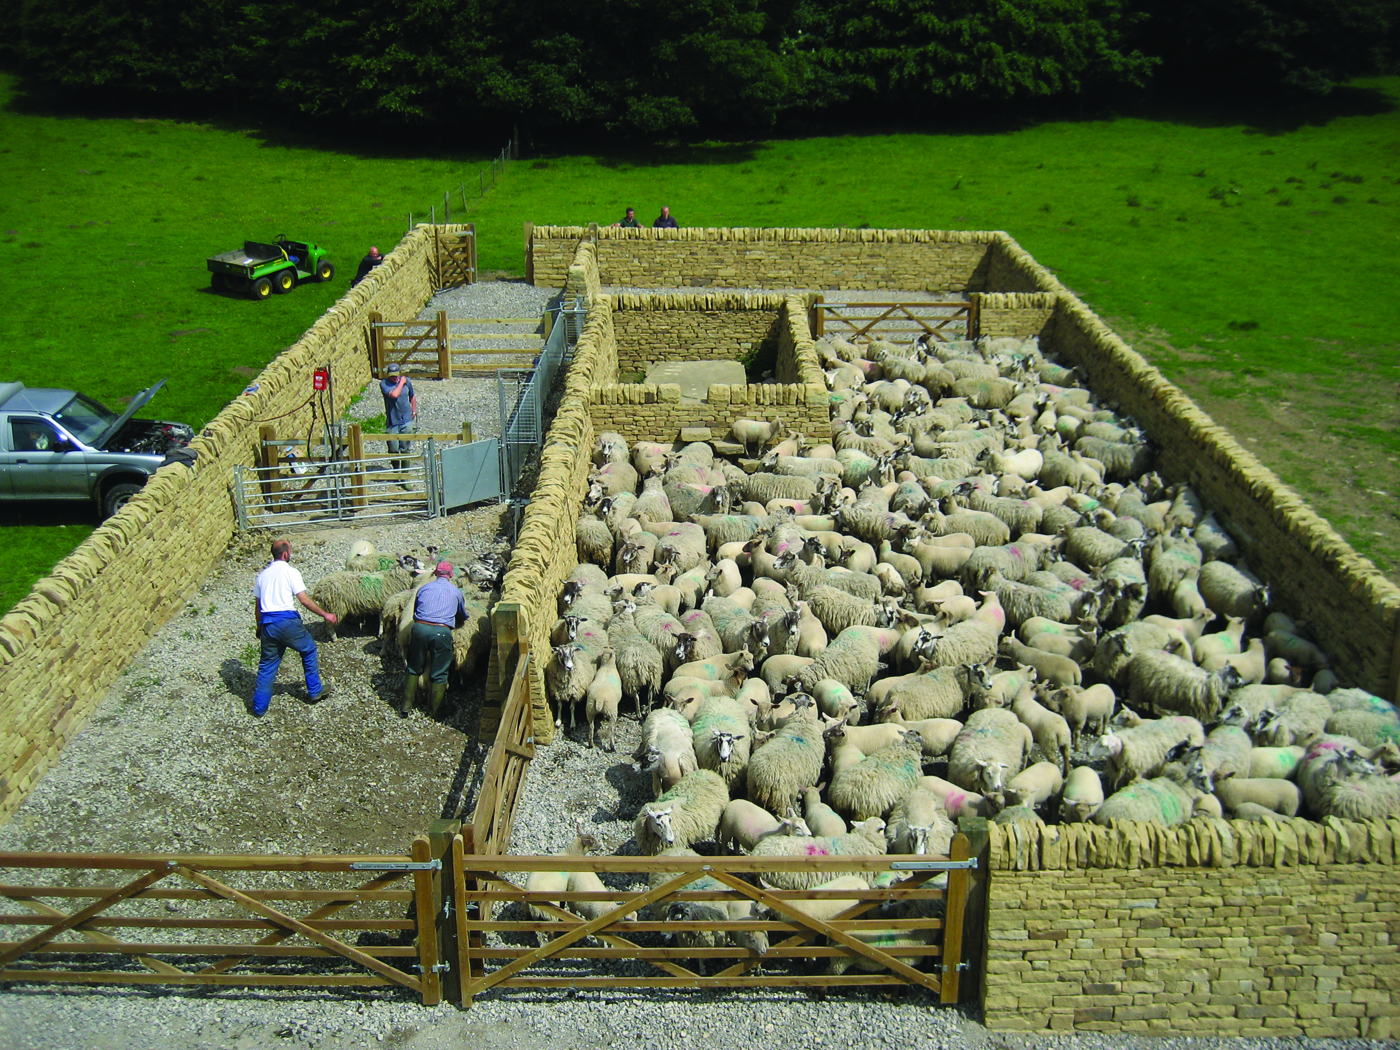 A dry stone wall sheep fold enclosure full of sheep